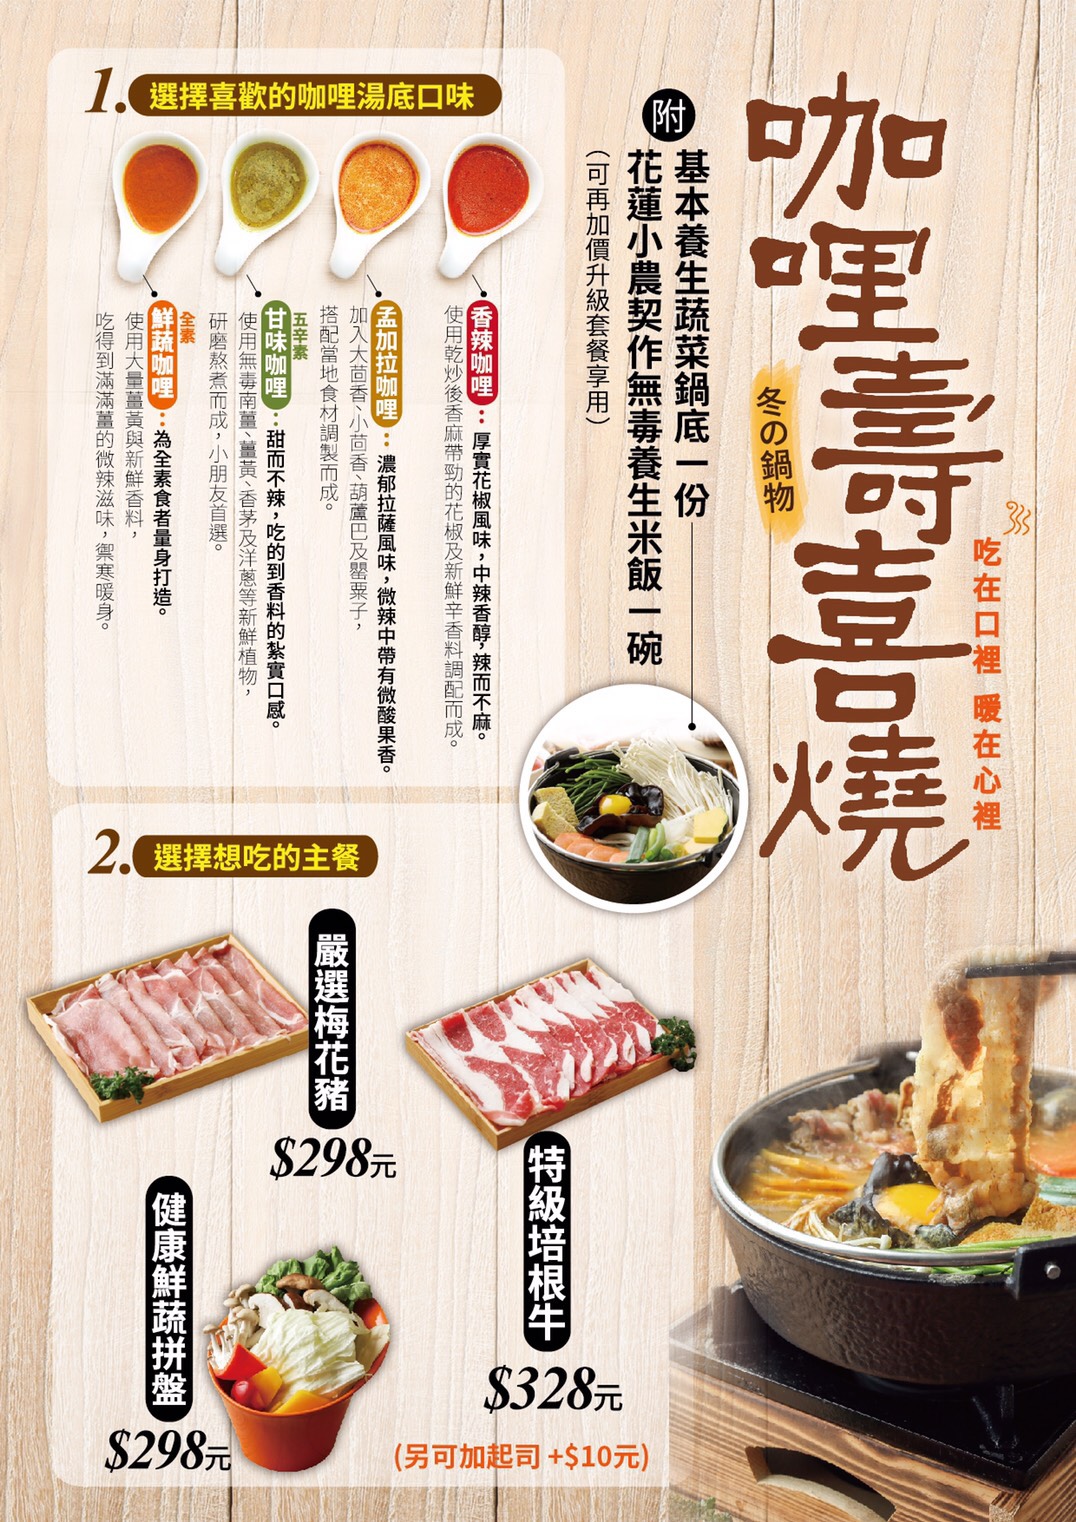 優惠,咖哩壽喜燒,客製化,家咖哩,月見蛋,桃園火車站,筷食尚,鑄鐵起司蛋飯